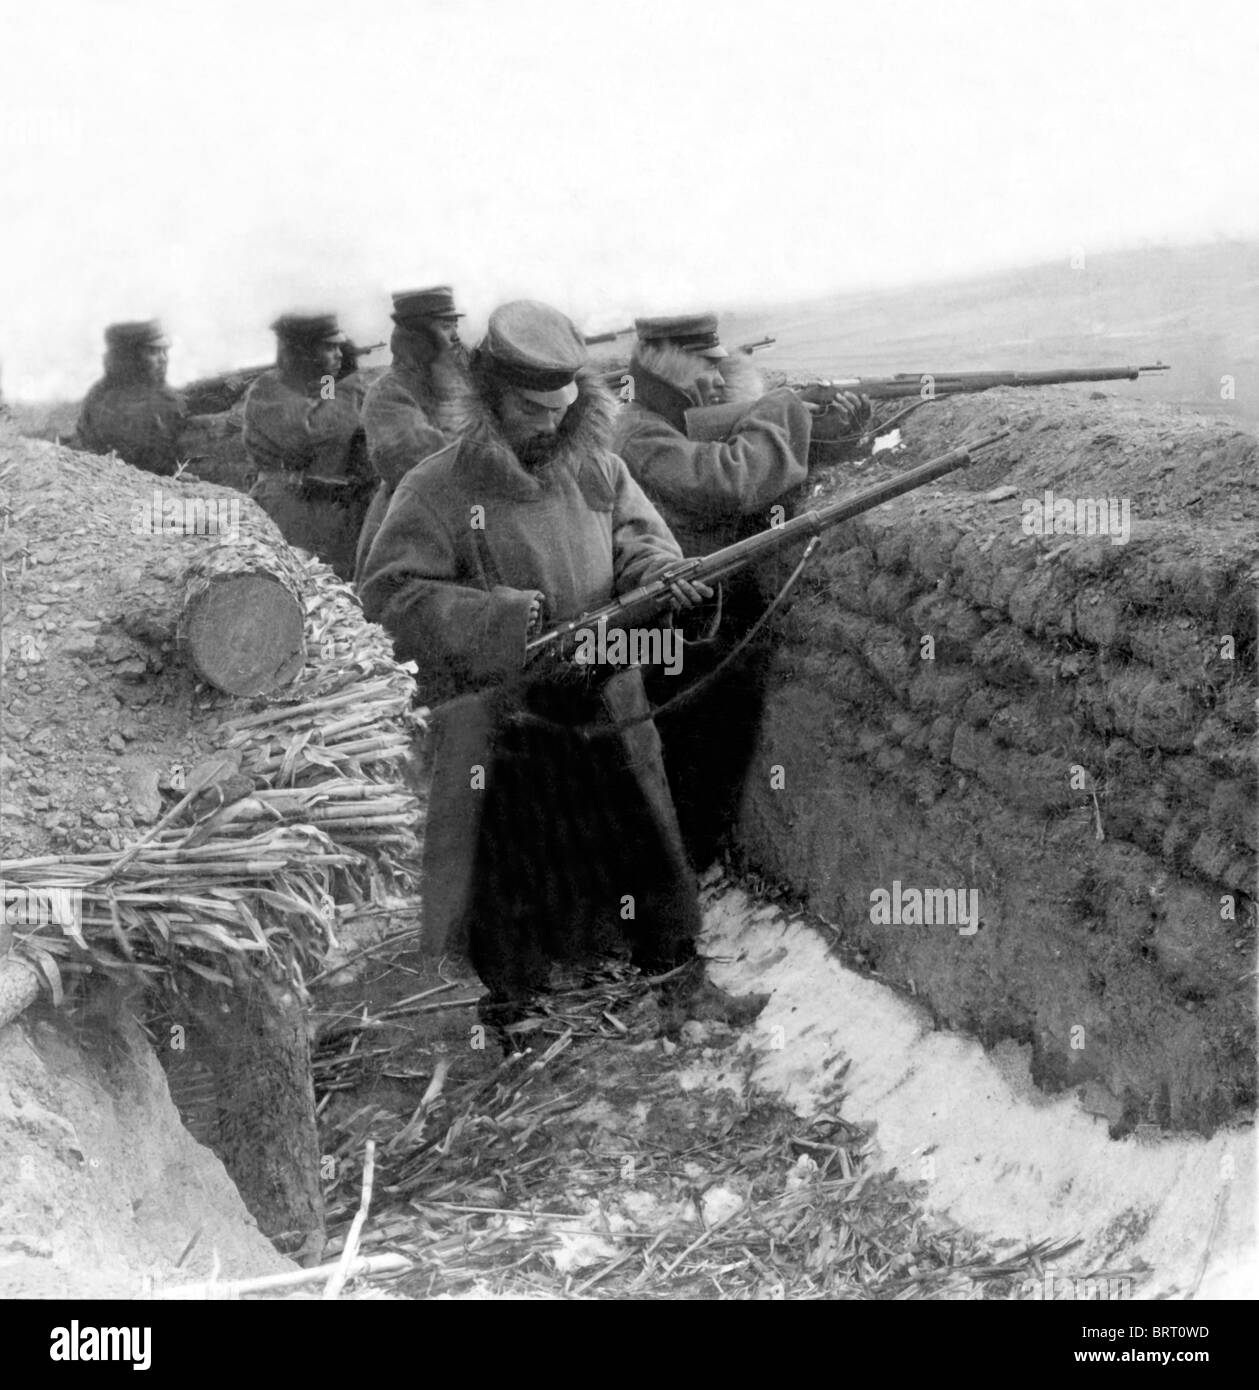 Soldats dans une tranchée, la photographie historique, autour de 1915, Première Guerre mondiale Banque D'Images